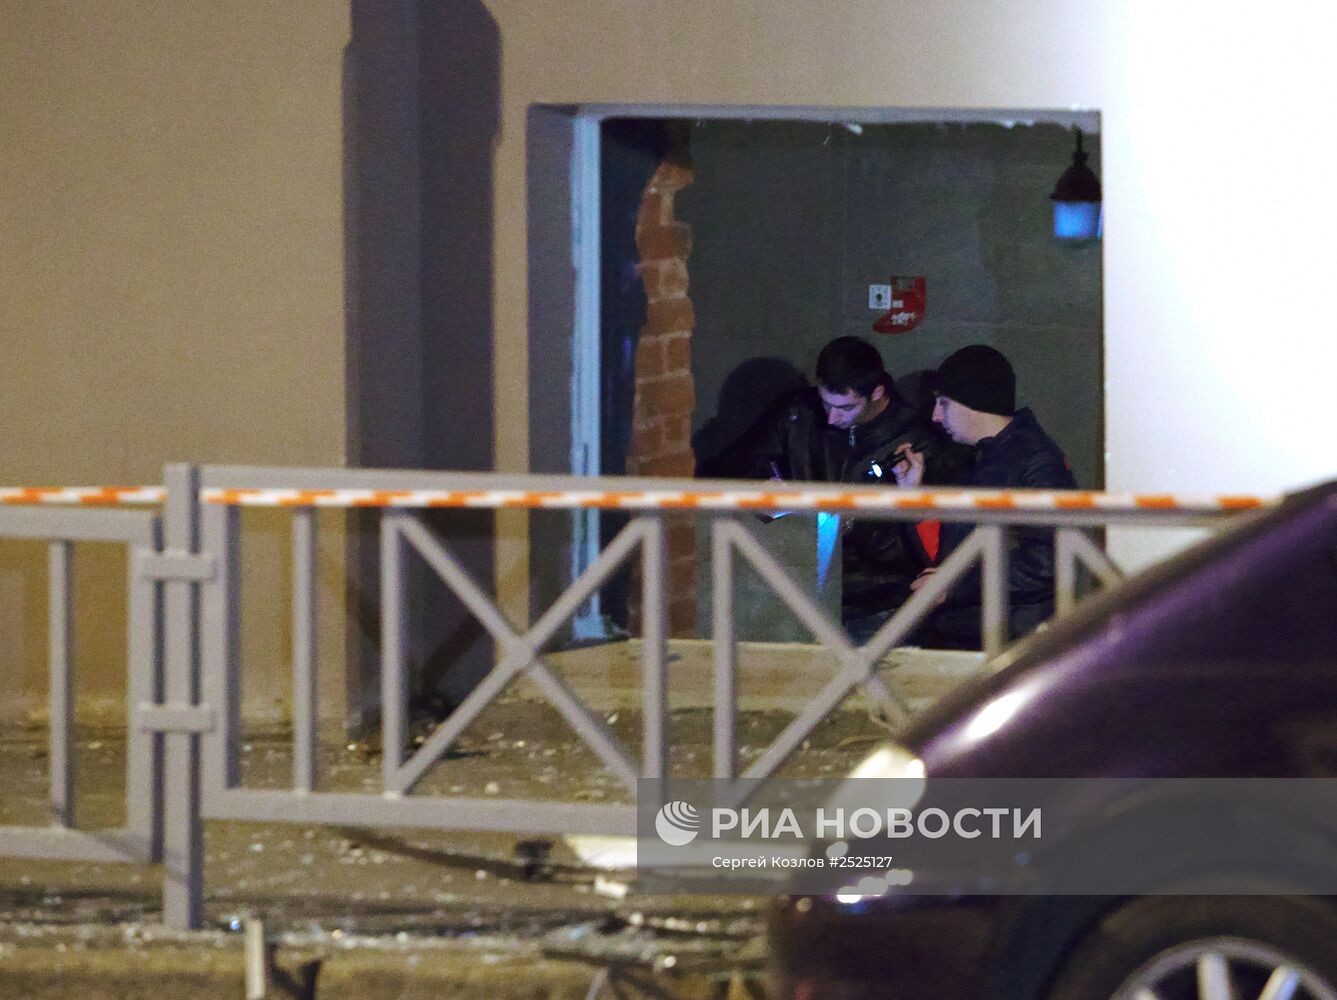 Последствия взрыва в ночном клубе Харькова